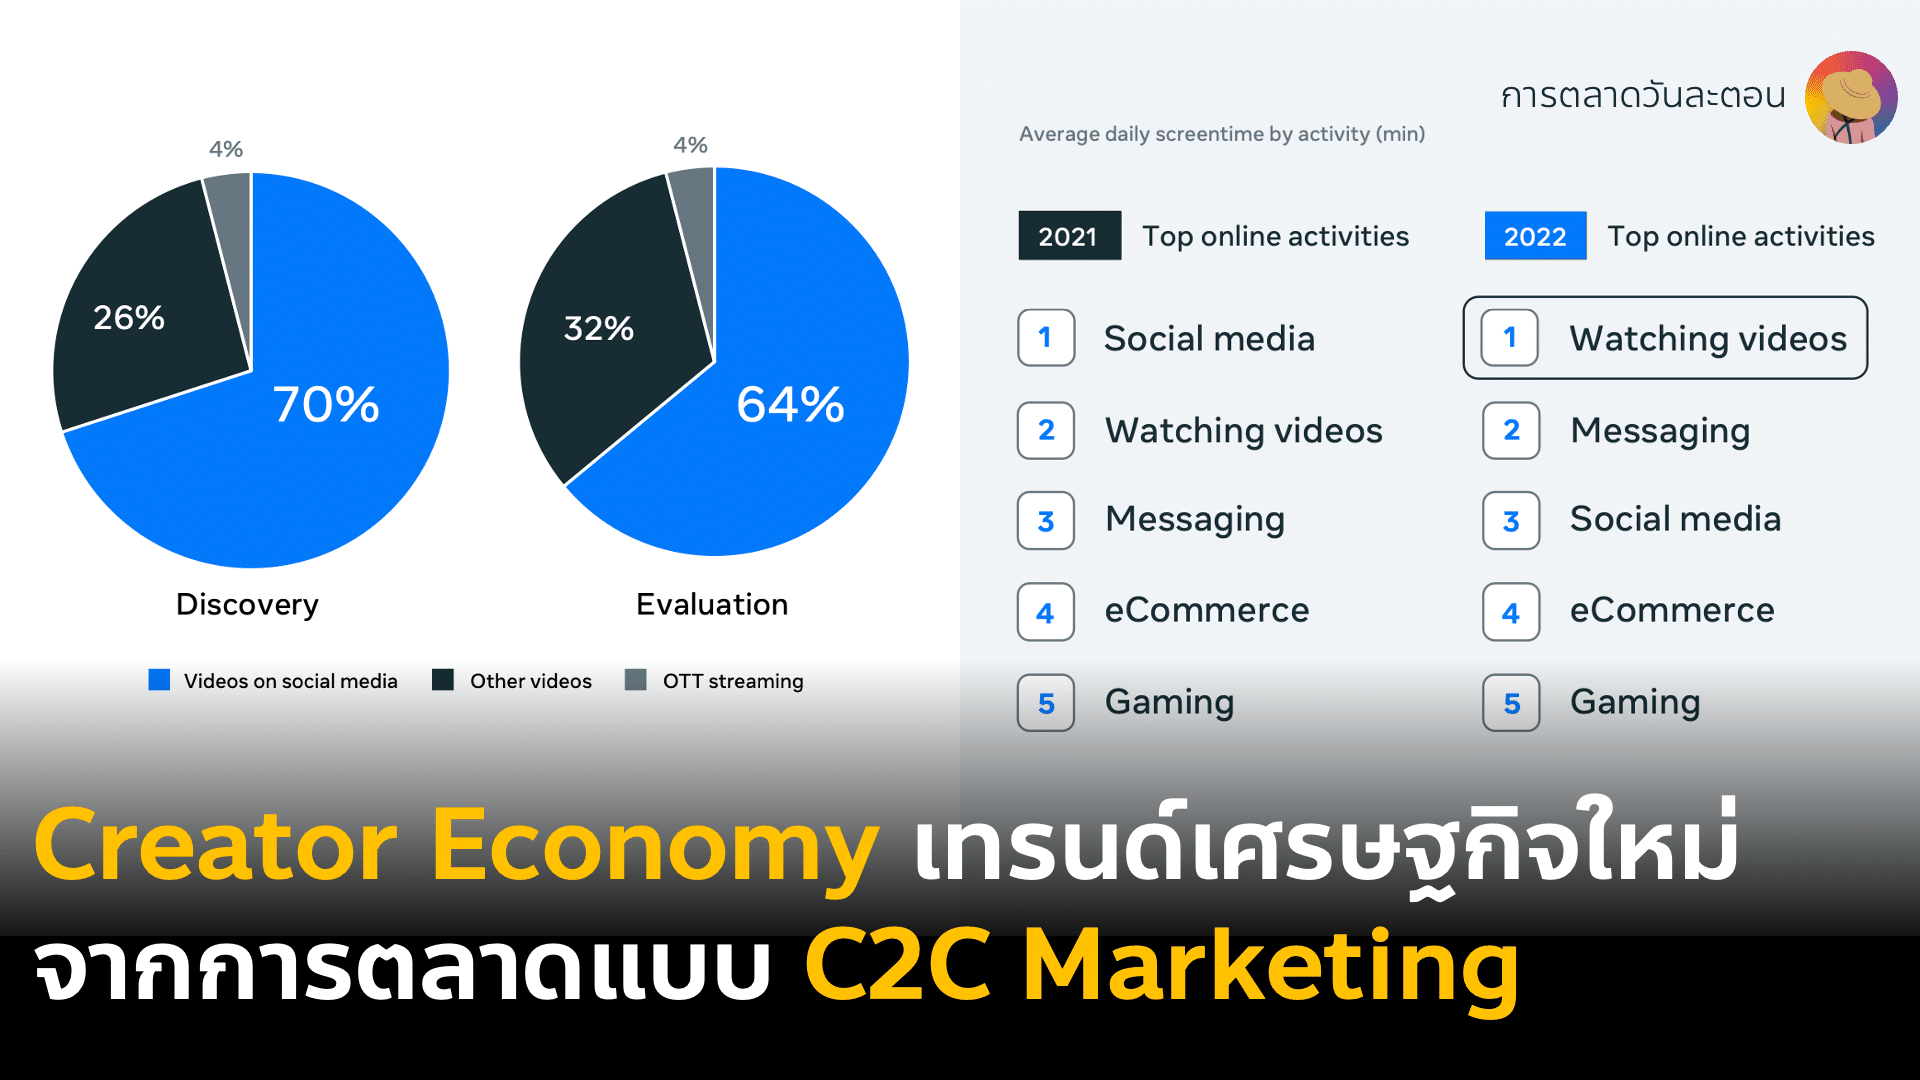 จากยุคเศรษฐกิจดิจิทัล Digital Economy สู่ Creator Economy การตลาด C2C Marketing Creator 2 Consumer ด้วย Live Commerce และ Affiliate marketing